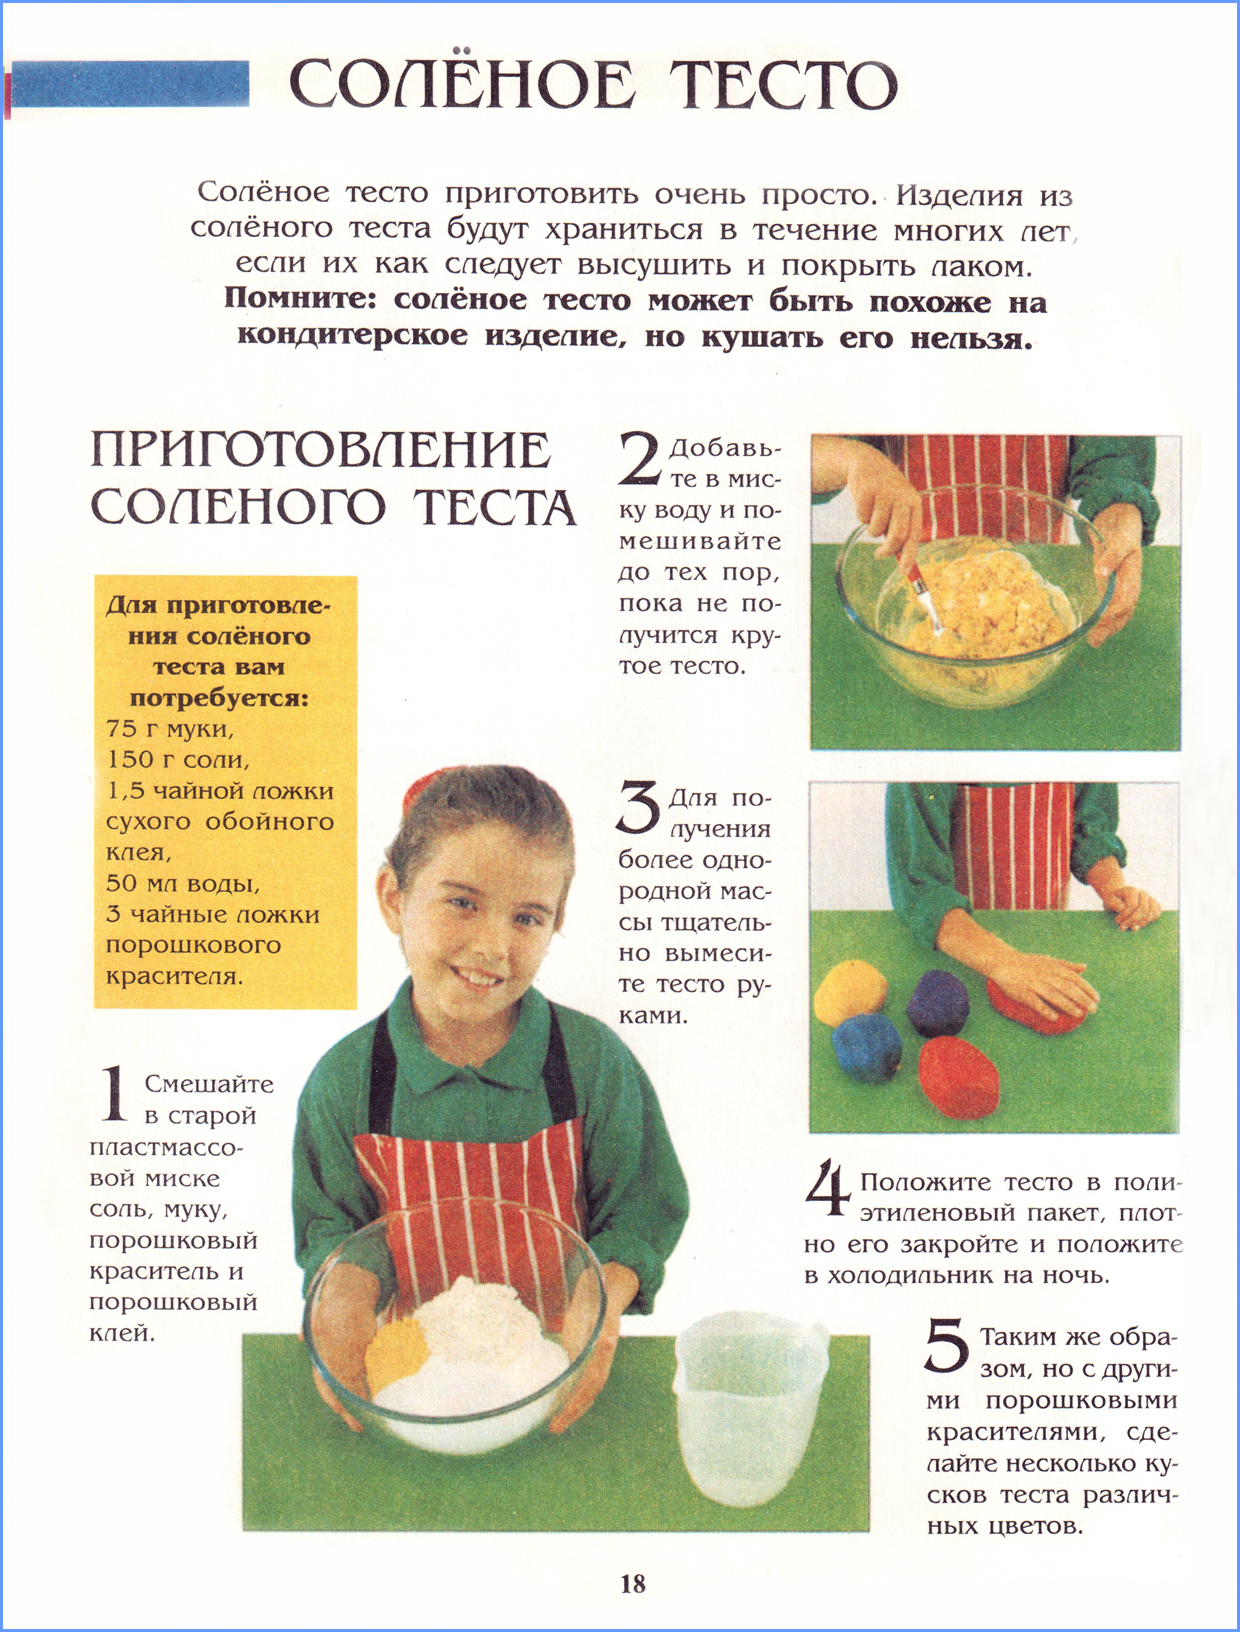 Как сделать соленая теста рецепт. Как делать солёное тесто для поделок. Рецепт детского теста для лепки в домашних условиях. Как сделать солёное тесто для лепки в домашних условиях. Как делать тесто для лепки с солью.